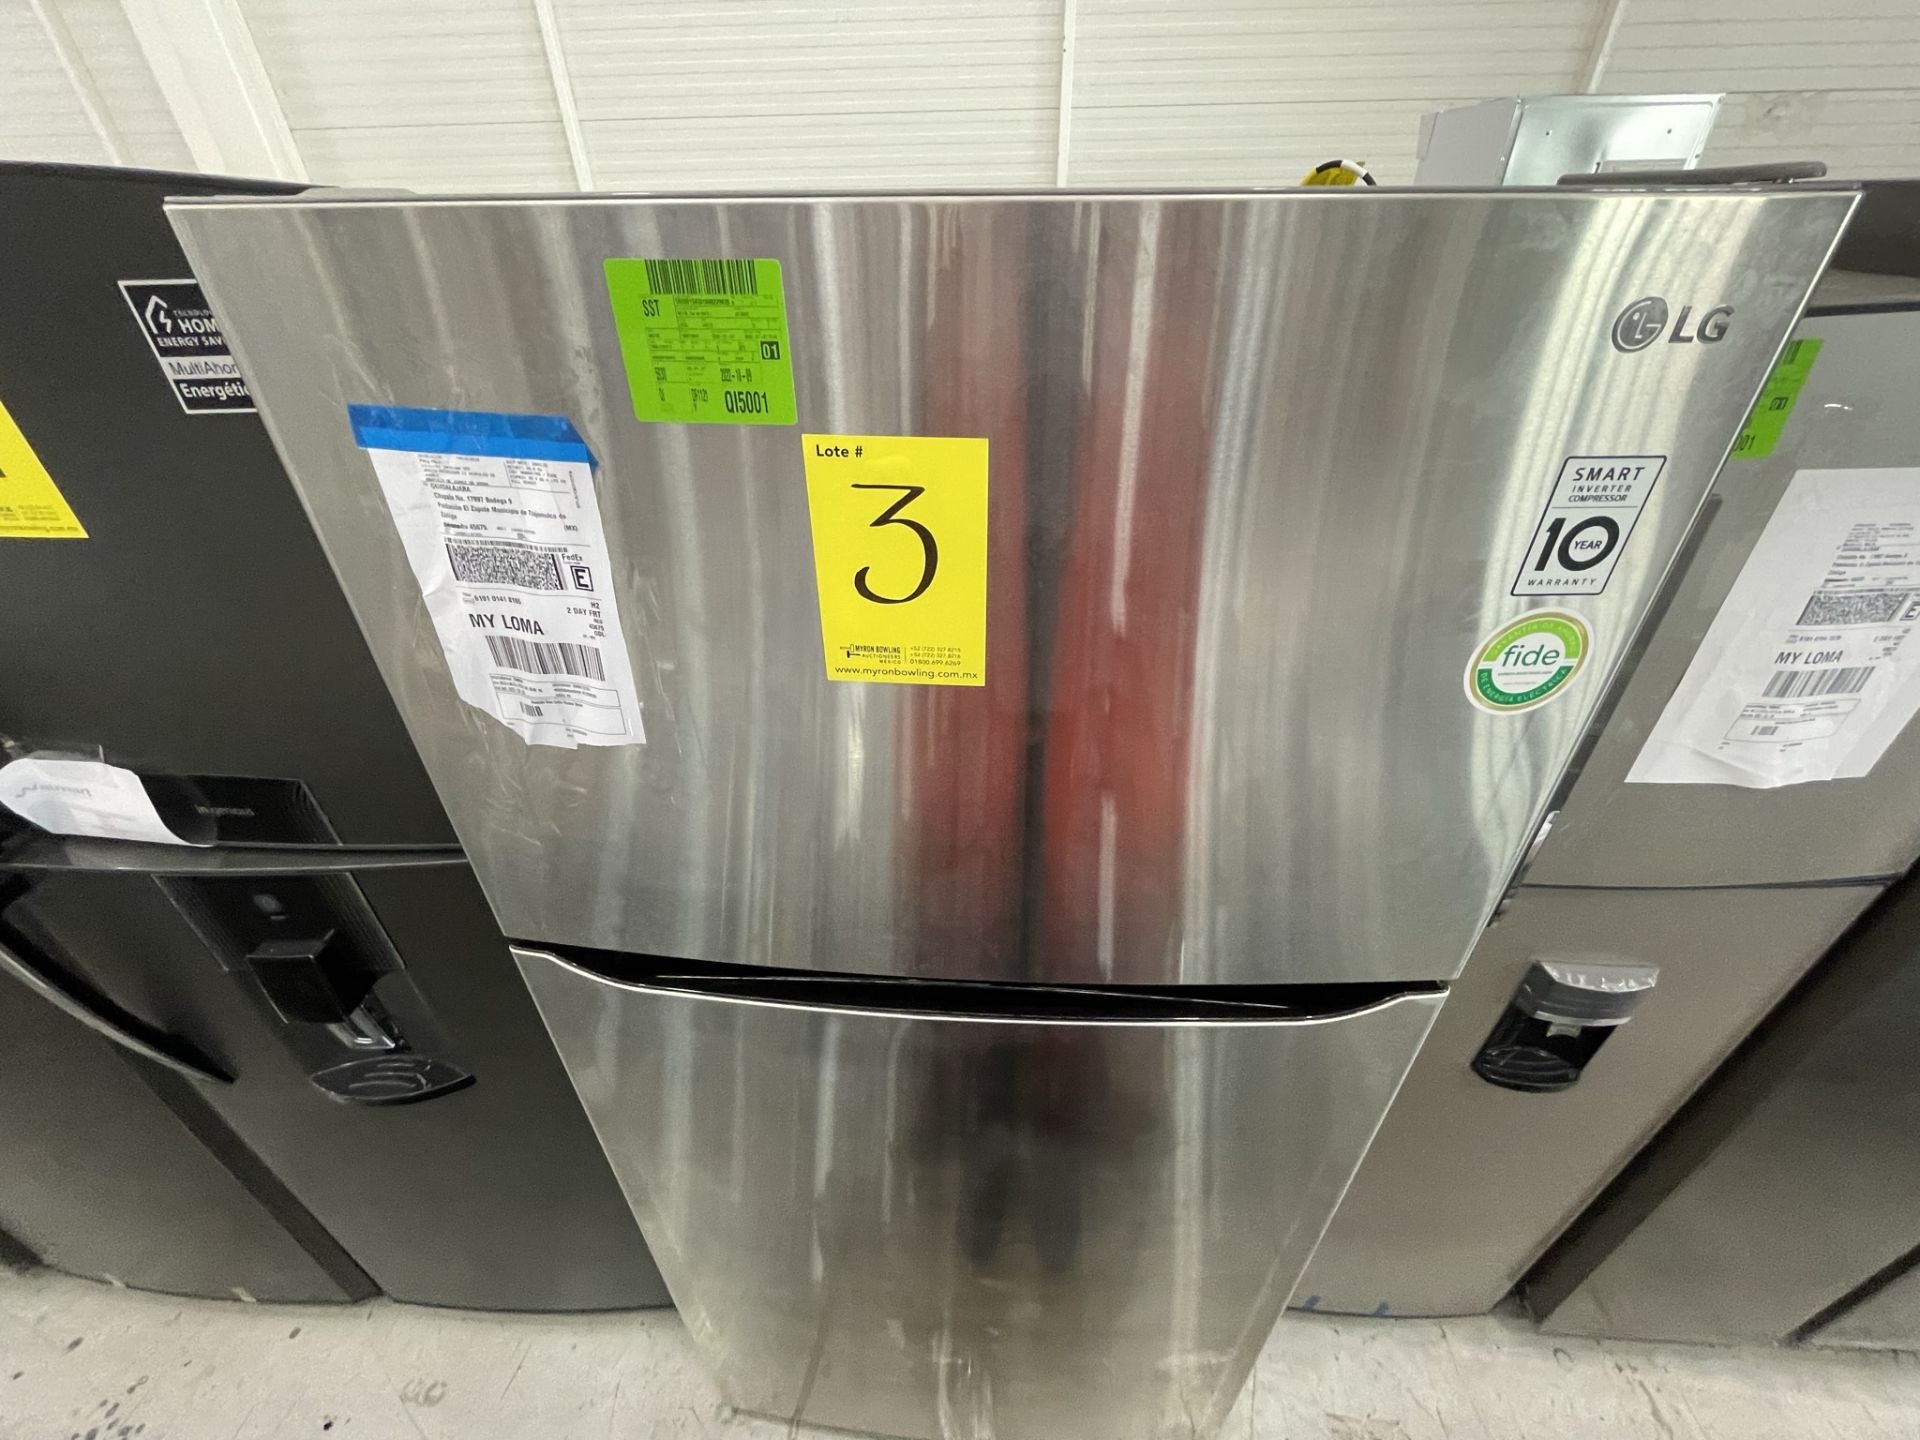 Lote de 2 Refrigeradores contiene: 1 Refrigerador Marca LG, Modelo GT24BS, Serie T1C953, Color Gris - Image 8 of 23